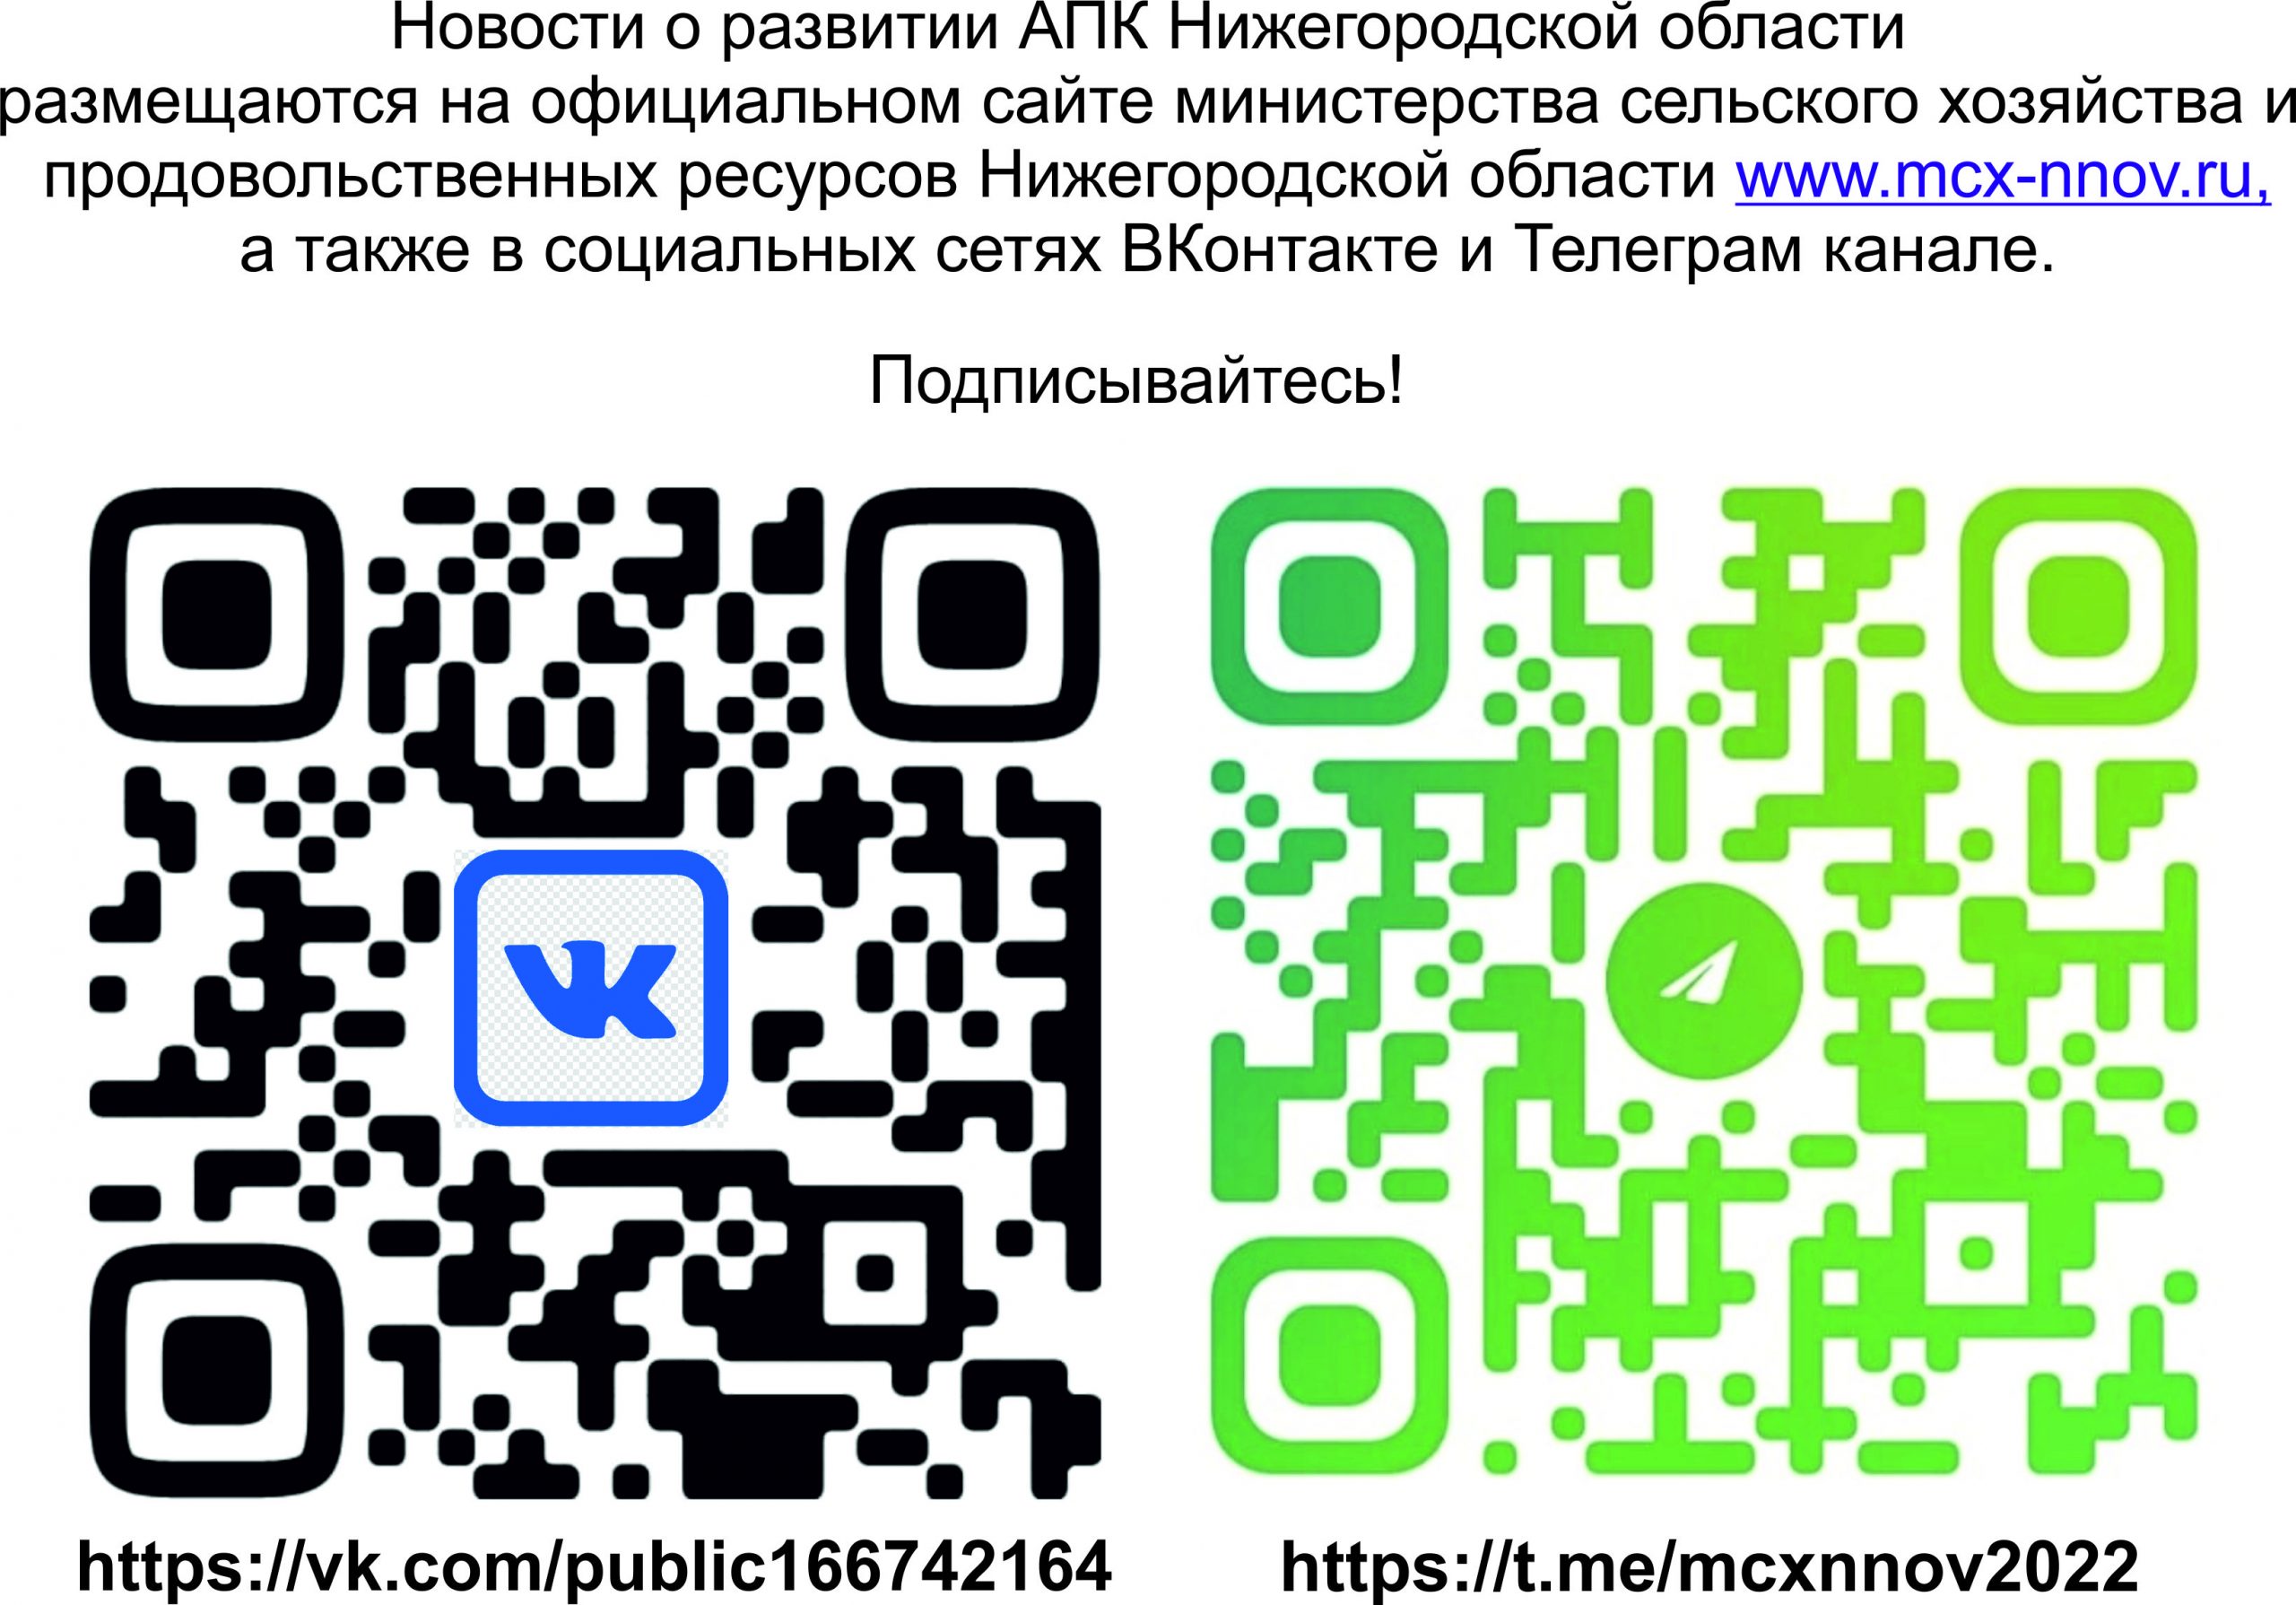 Ссылки на официальный сайт и социальные сети министерства сельского хозяйства и продовольственных ресурсов Нижегородской области